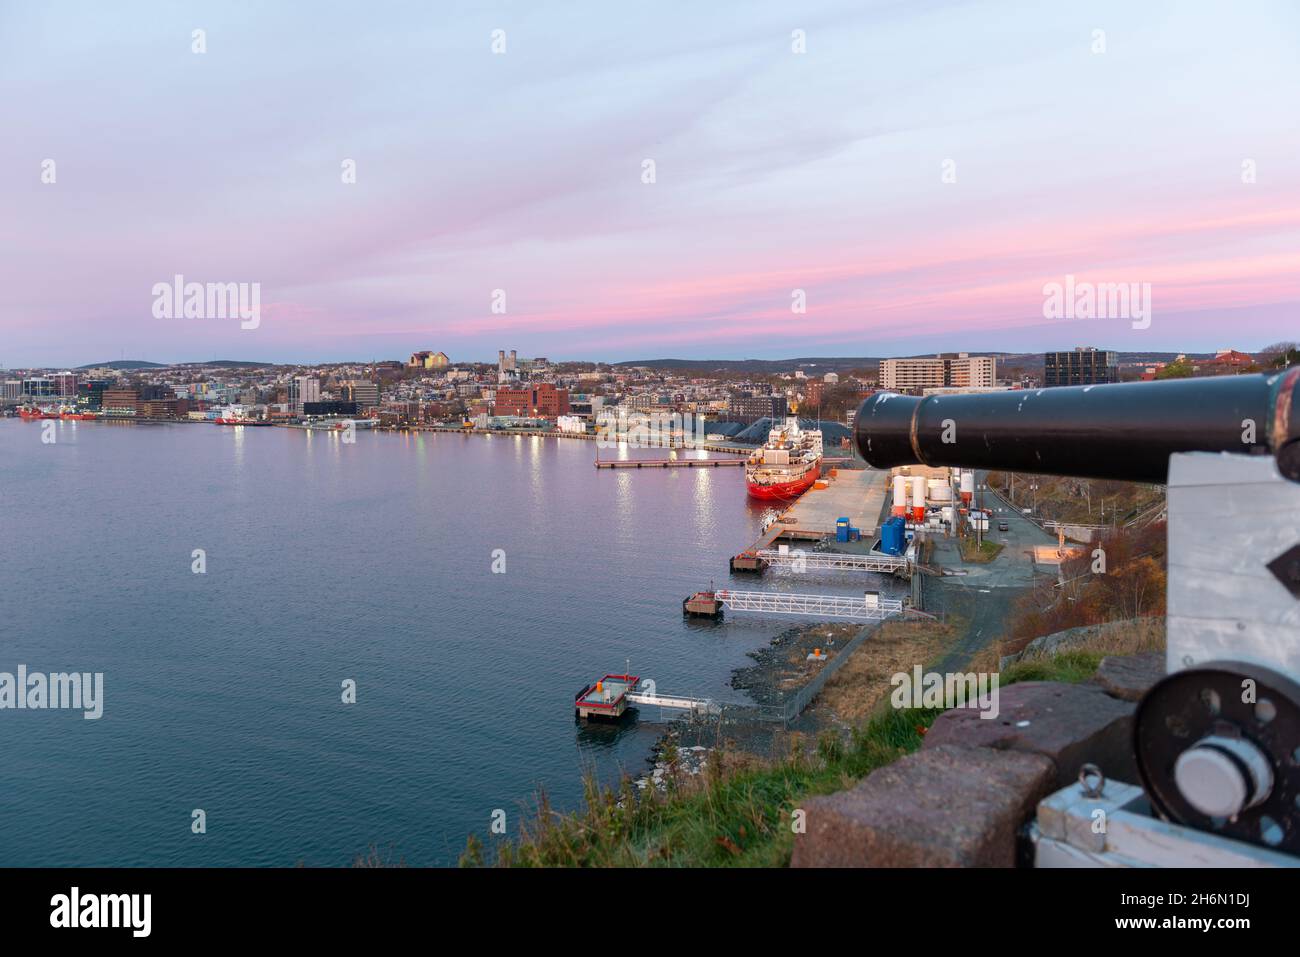 Un cielo rosa nocturno con vistas al puerto de San Juan con el barco de la Guardia Costera Canadiense, Louis St Laurent, y los barcos de suministro de petróleo y gas amarrados en el puerto. Foto de stock